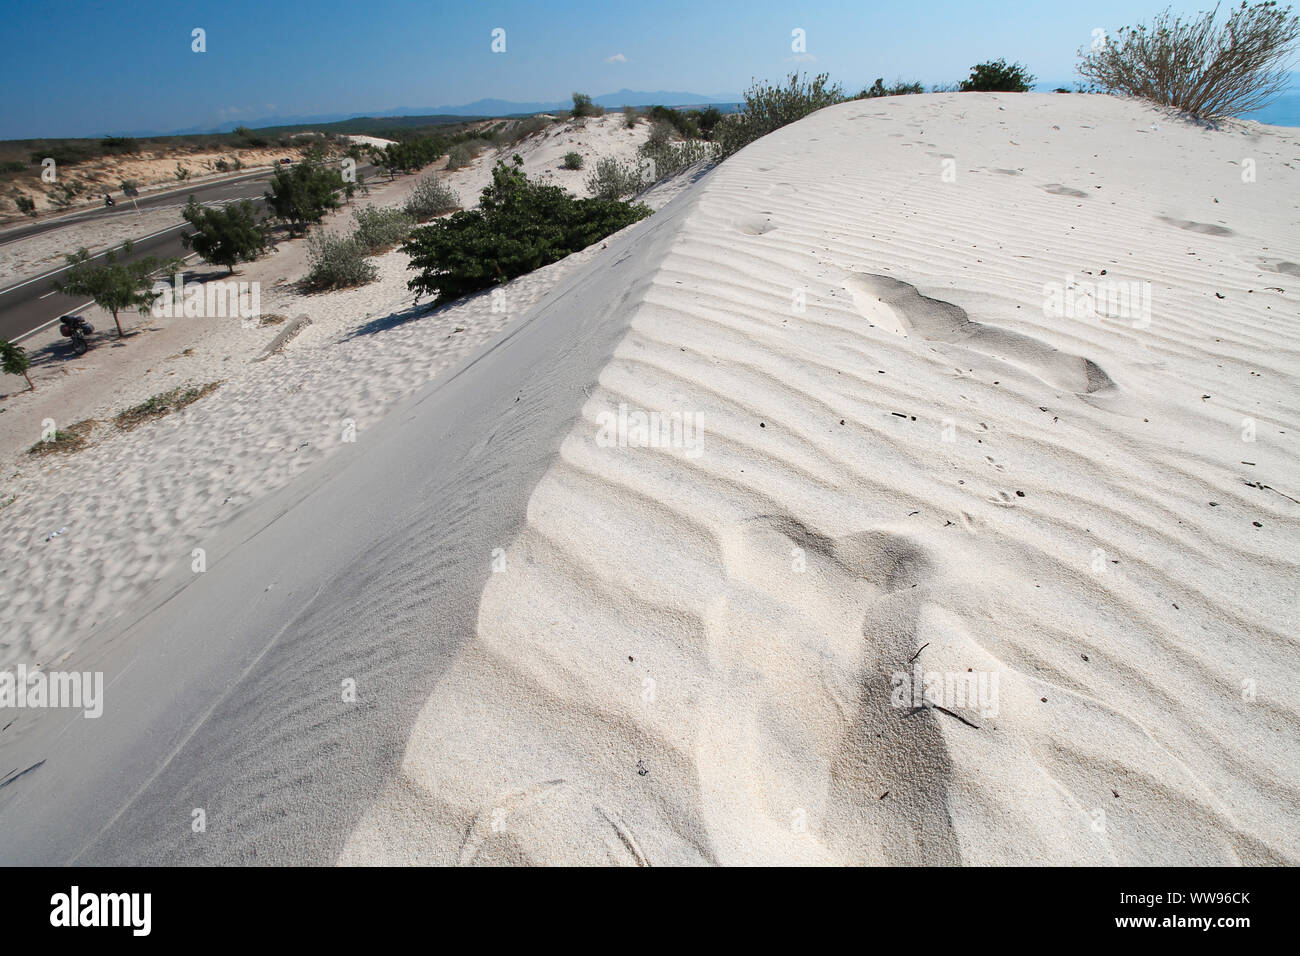 Dunes de sable blanc dans le désert de Phan ri cua, Vietnam qui est une destination touristique moins connue Banque D'Images